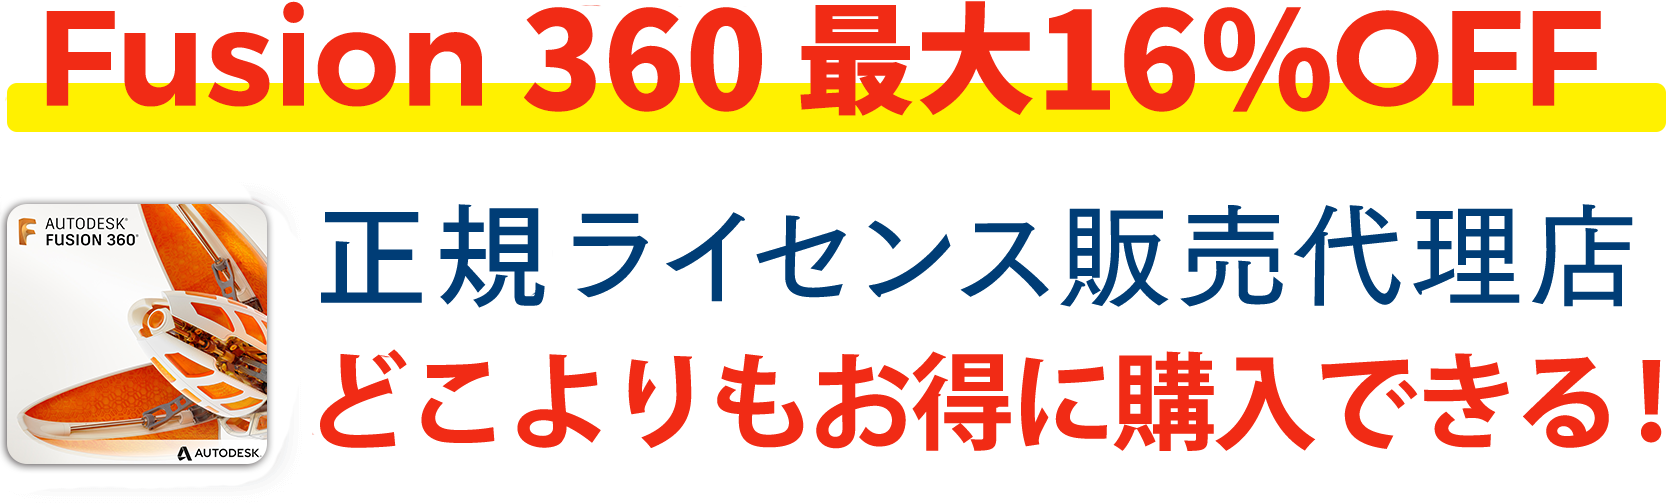 Fusion360全品30%OFF 正規ライセンス販売代理店 購入サイト